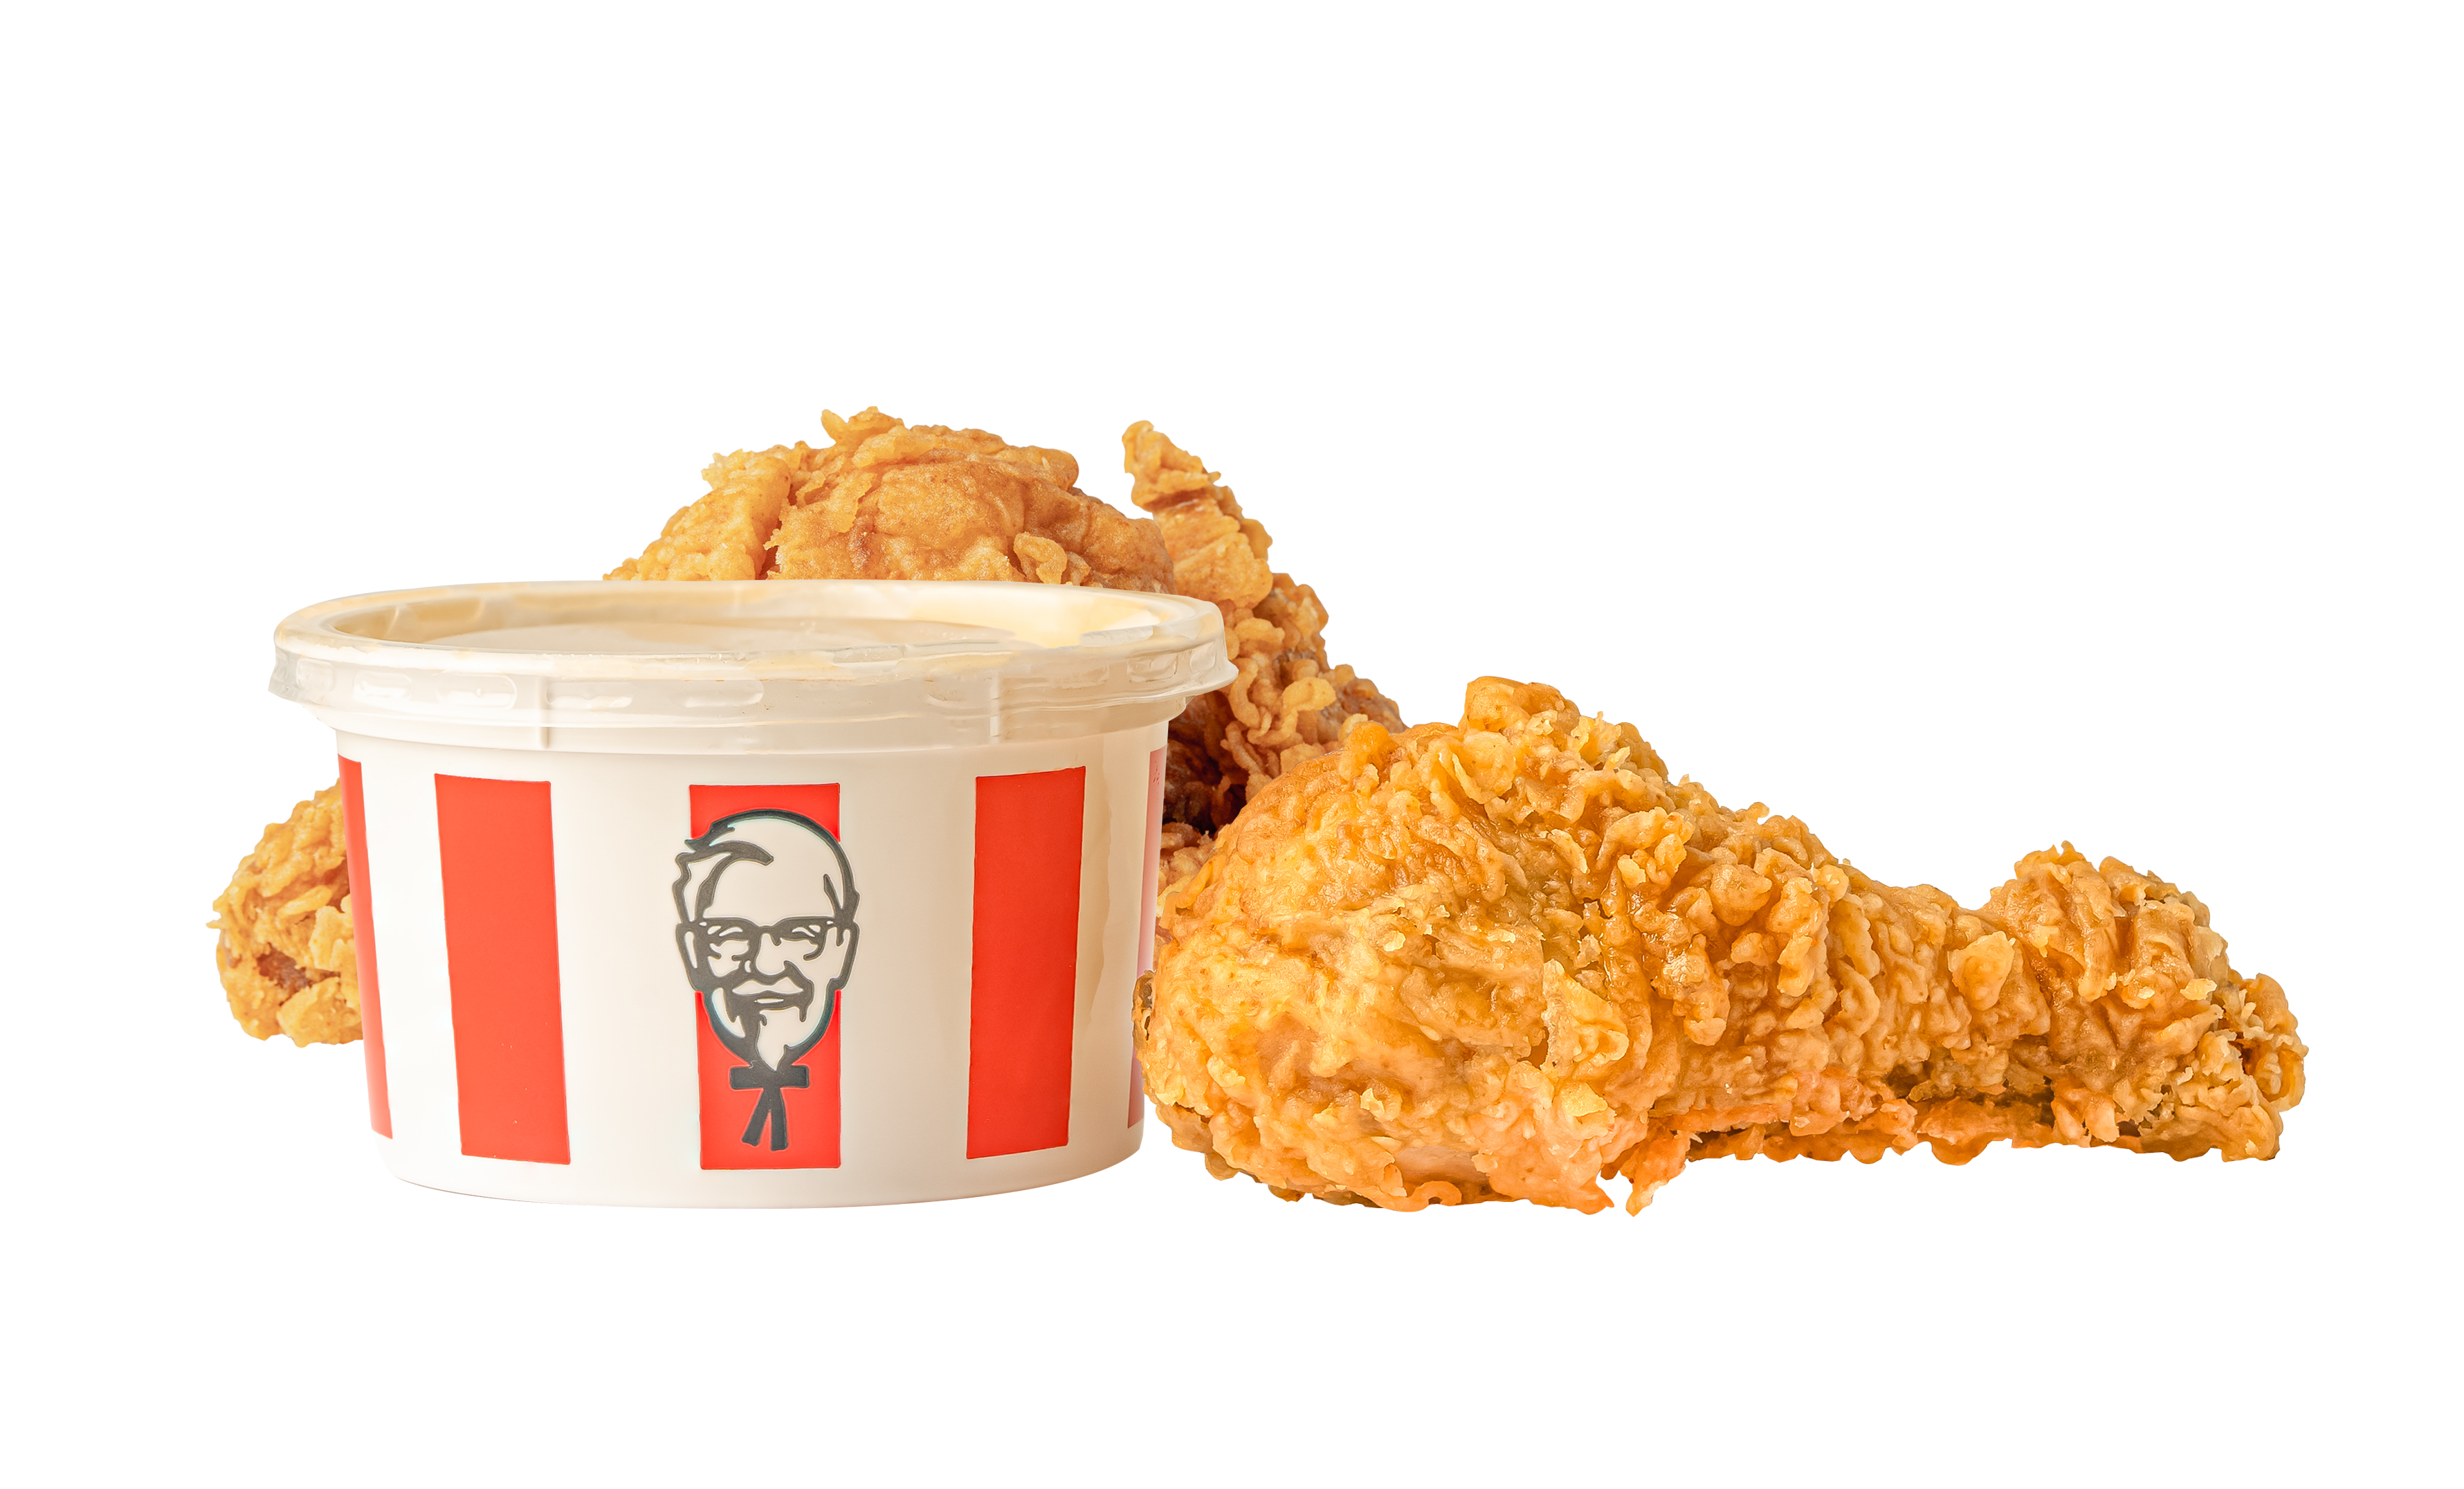 Logo giống Gà Rán: Cùng thưởng thức món Gà Rán KFC cực ngon và tìm hiểu thêm về những bí mật của logo giống Gà Rán độc nhất vô nhị này. Hình ảnh sẽ giúp bạn hiểu rõ hơn về sự kinh điển và độc đáo của thương hiệu KFC.